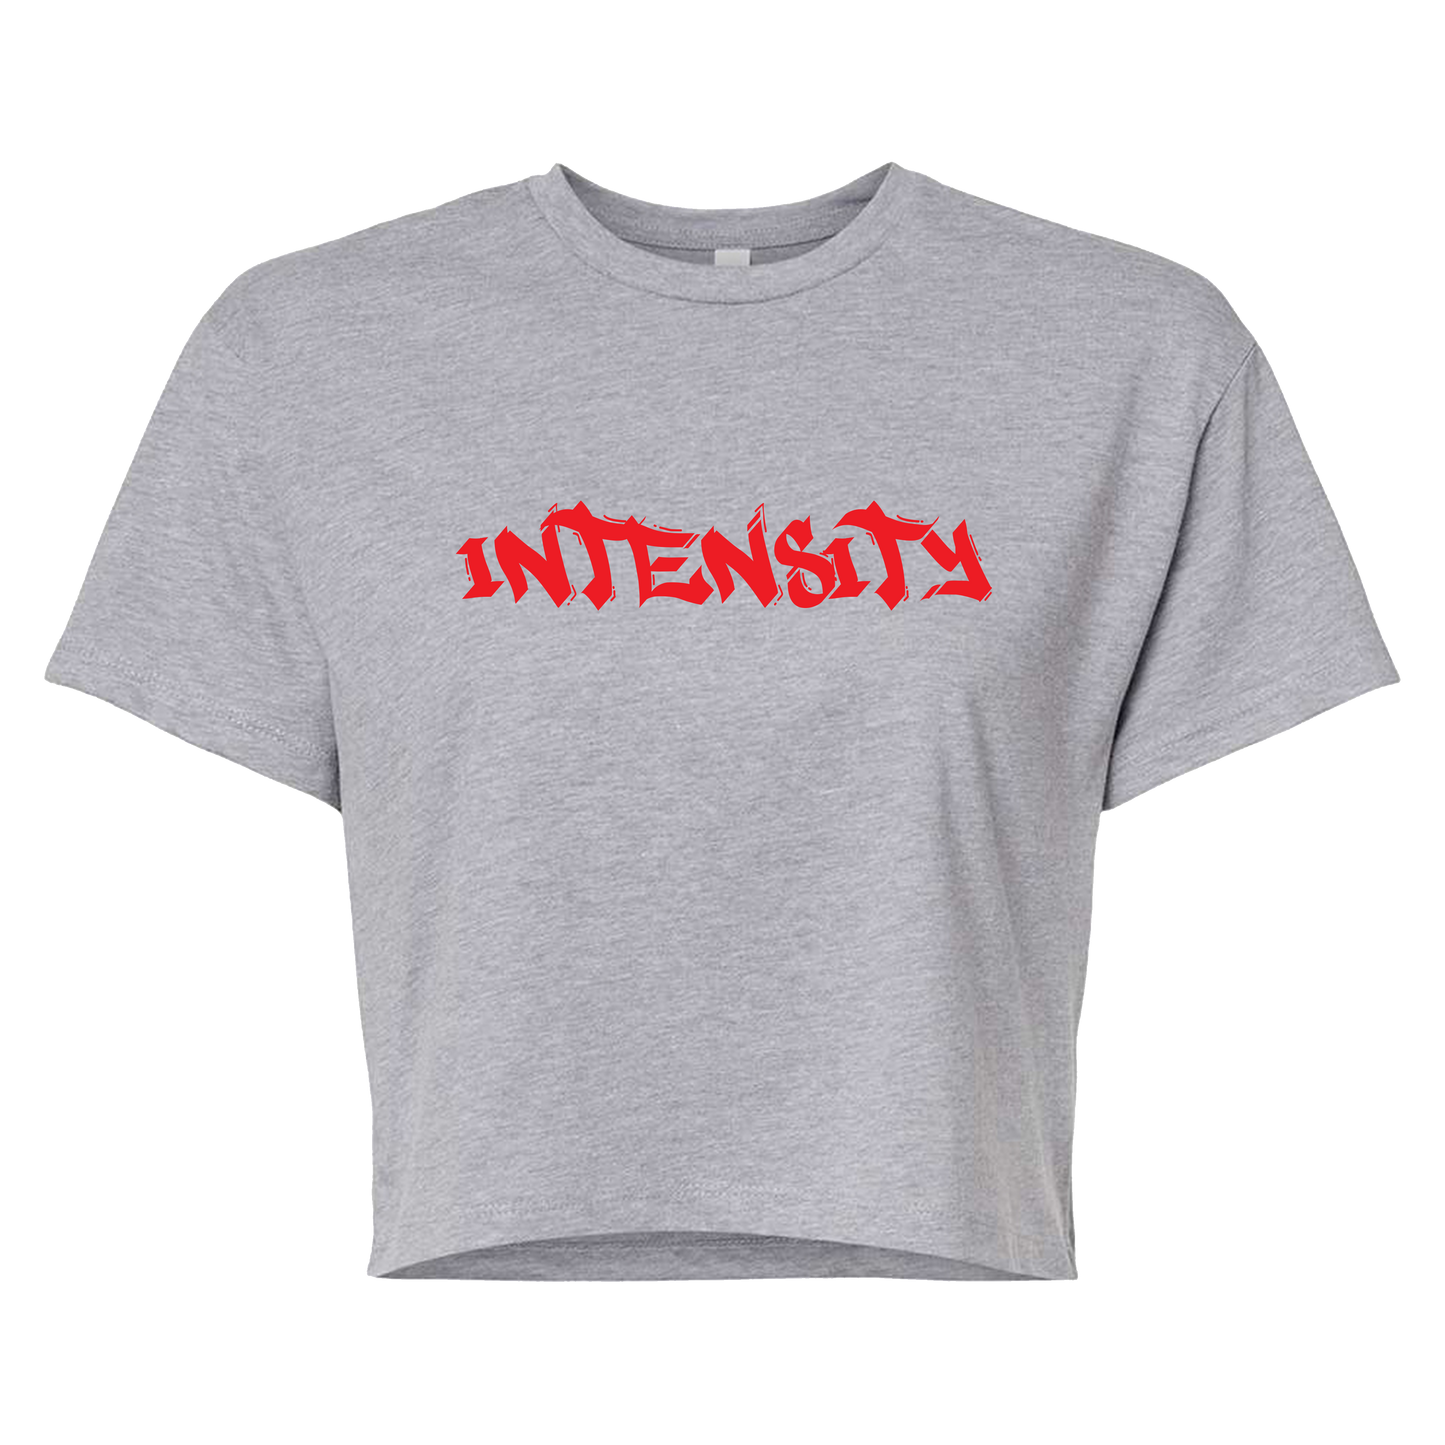 Women's "INTENSITY" Solid Grey Crop Top T-Shirt